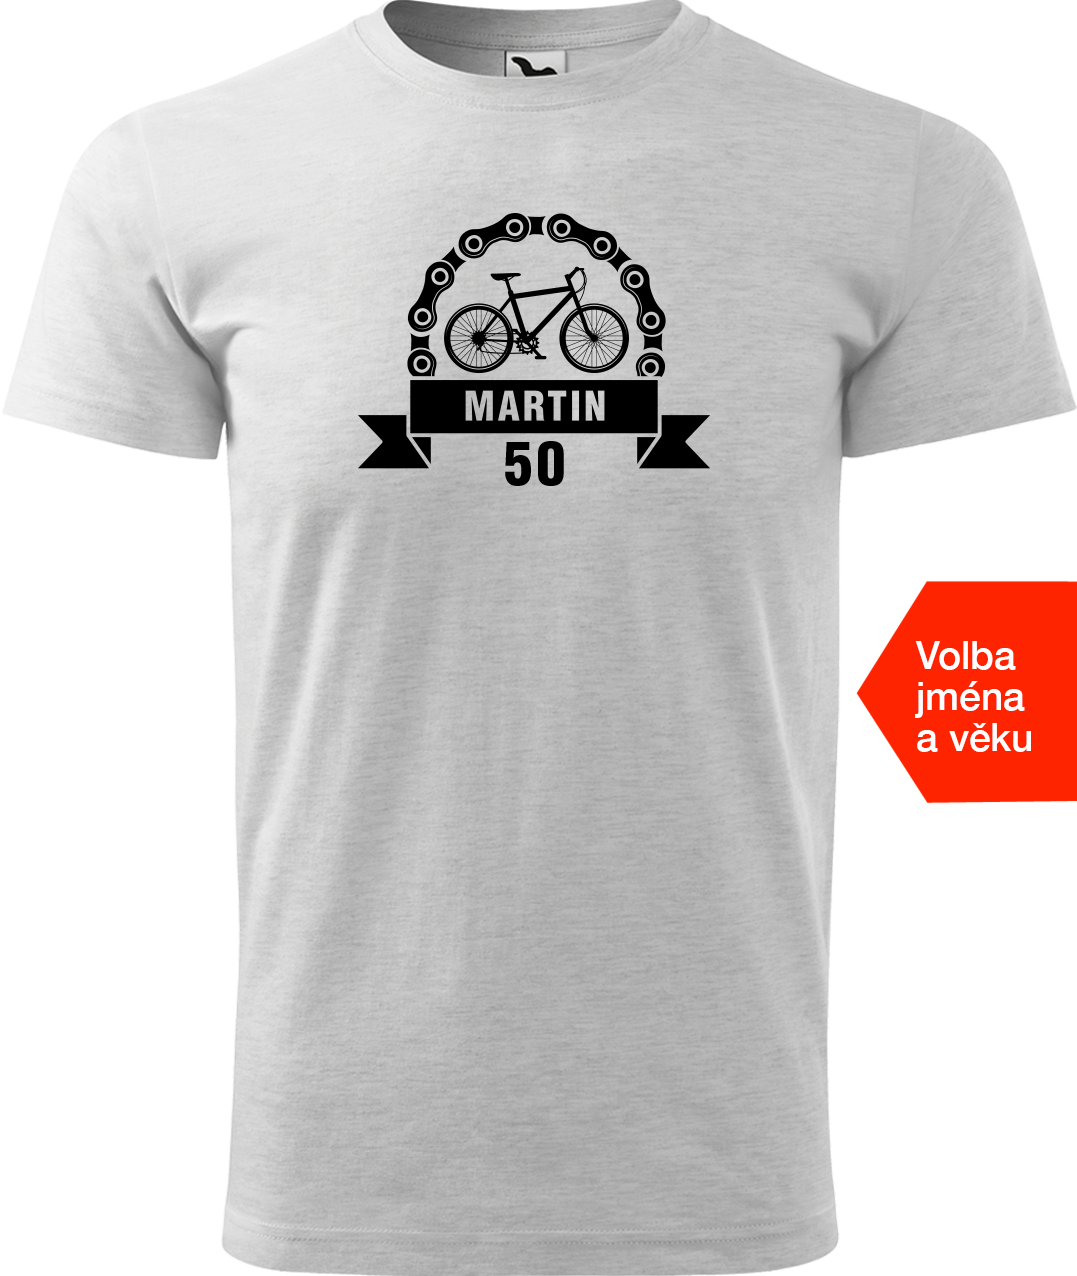 Pánské tričko pro cyklistu se jménem a věkem - Blahopřání Velikost: L, Barva: Světle šedý melír (03)